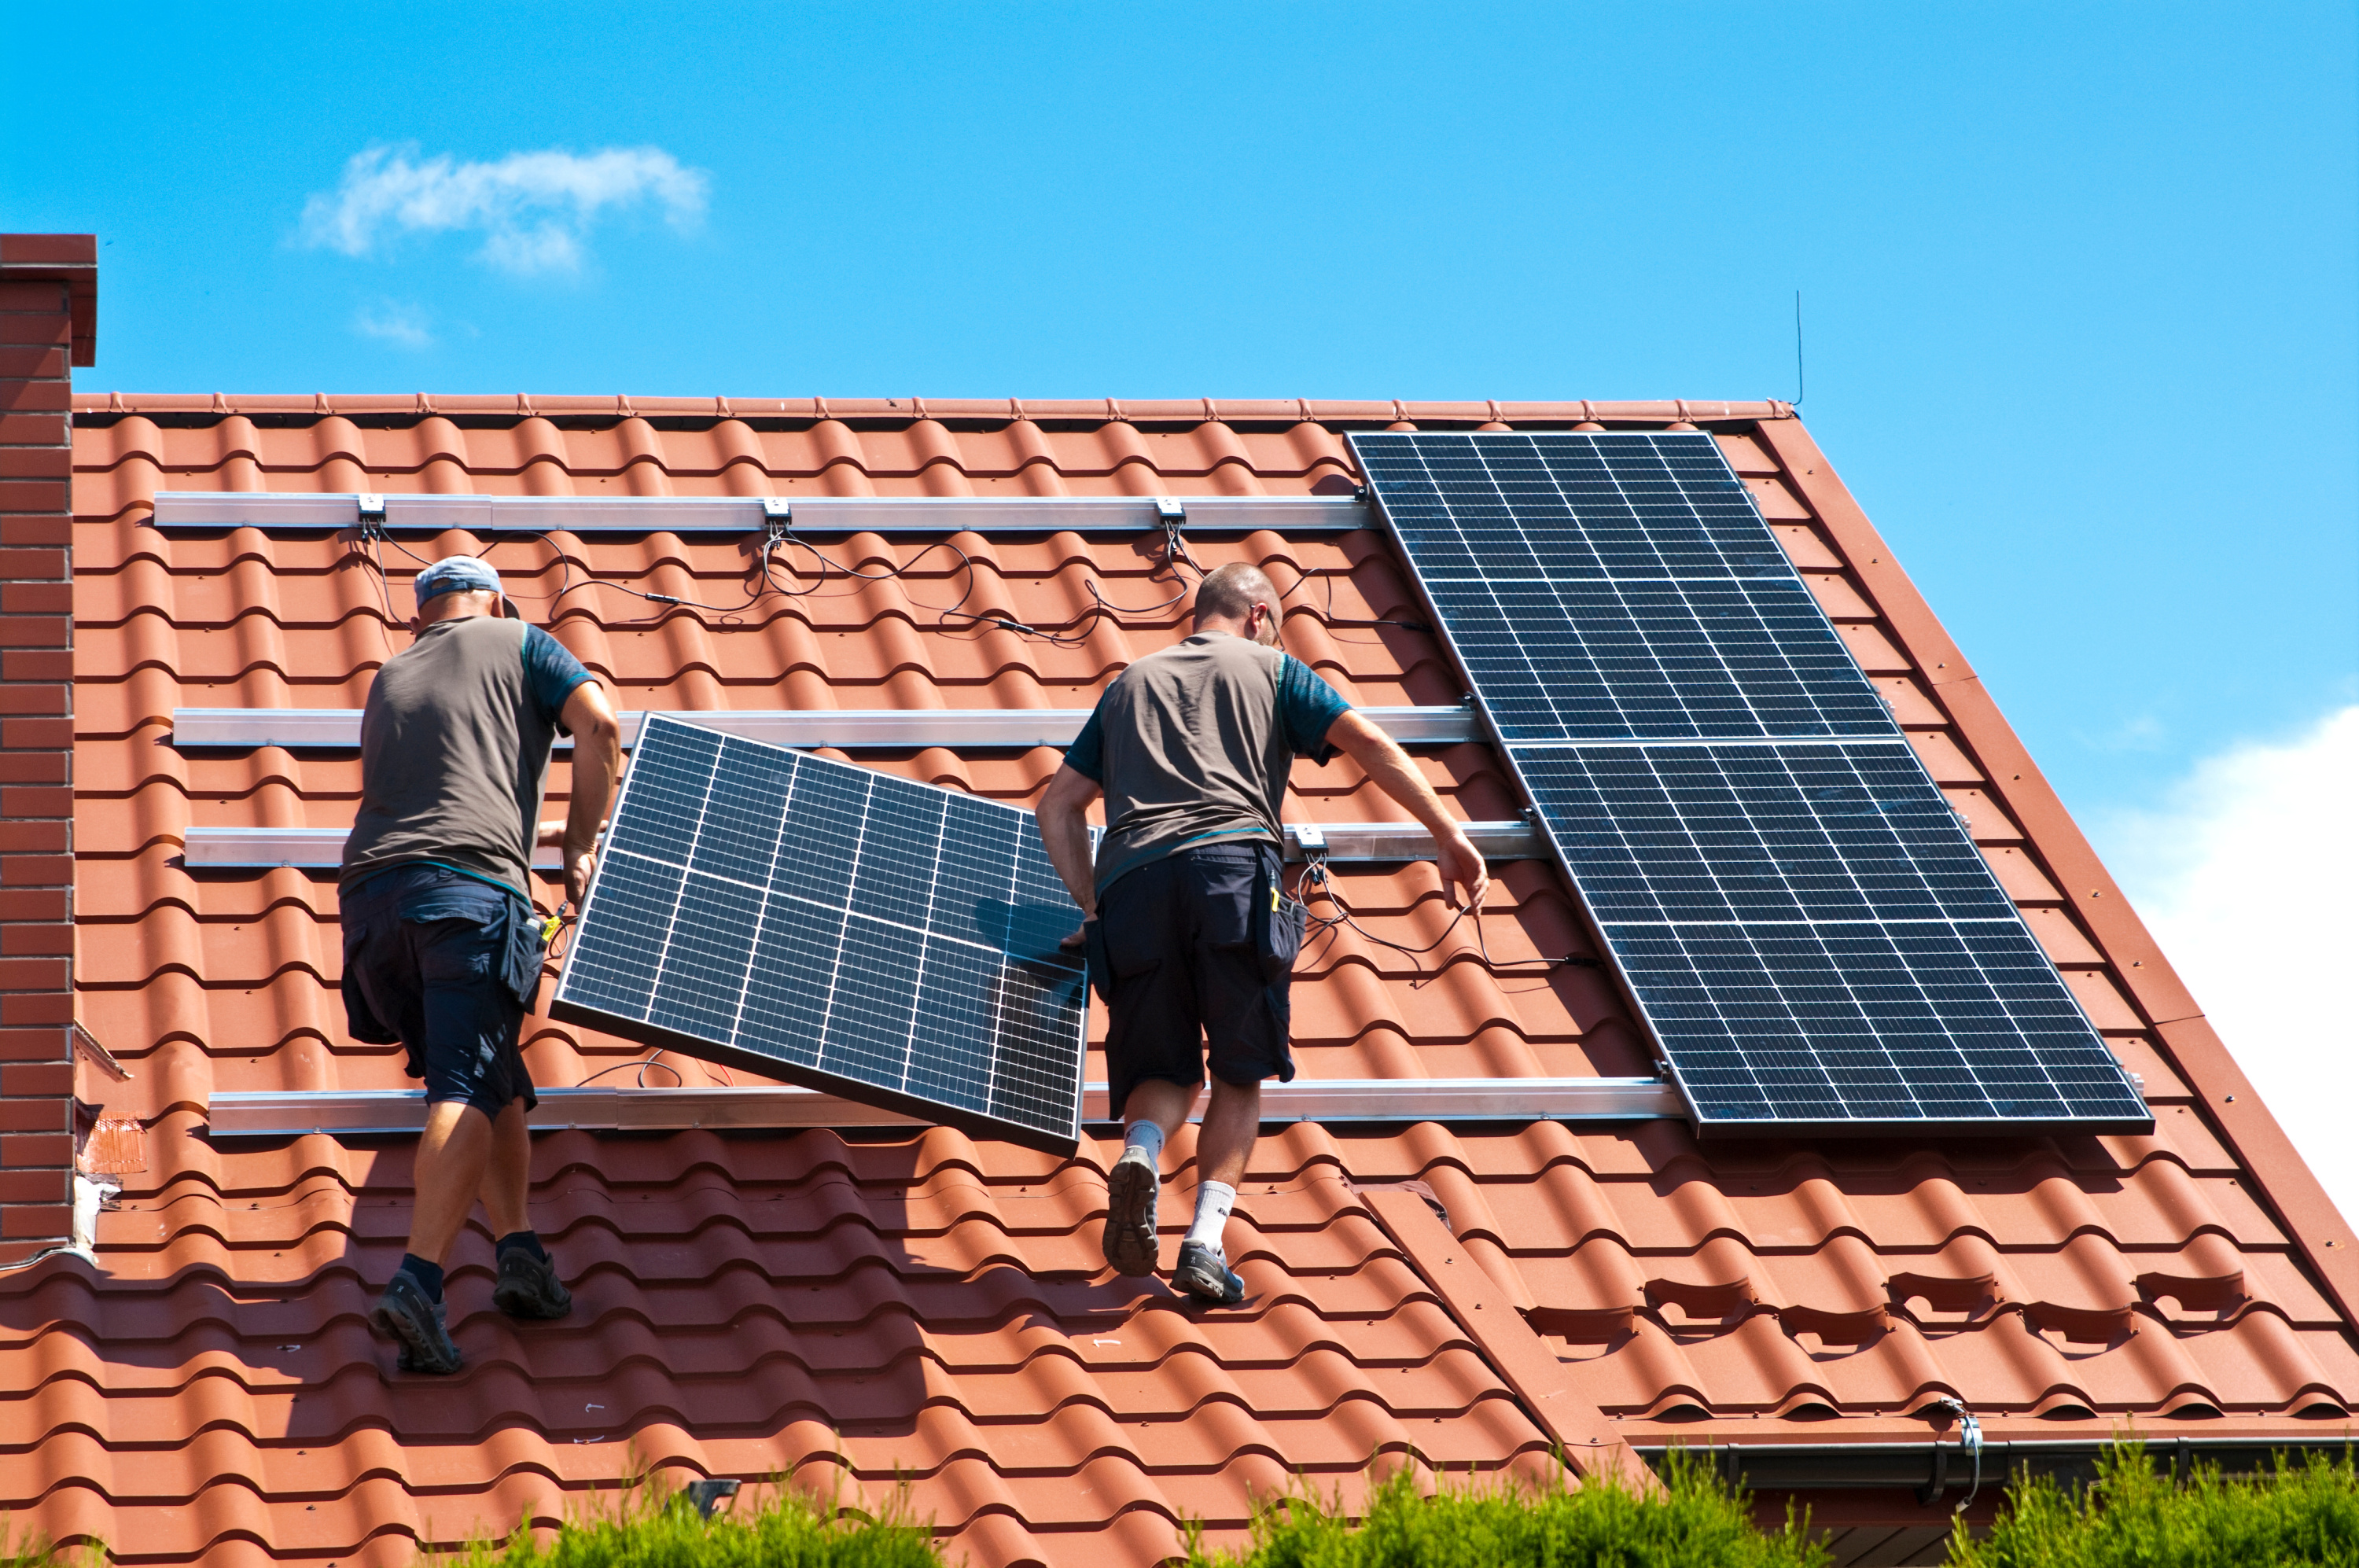 Panneaux solaires pour la maison : est-ce une solution rentable? 